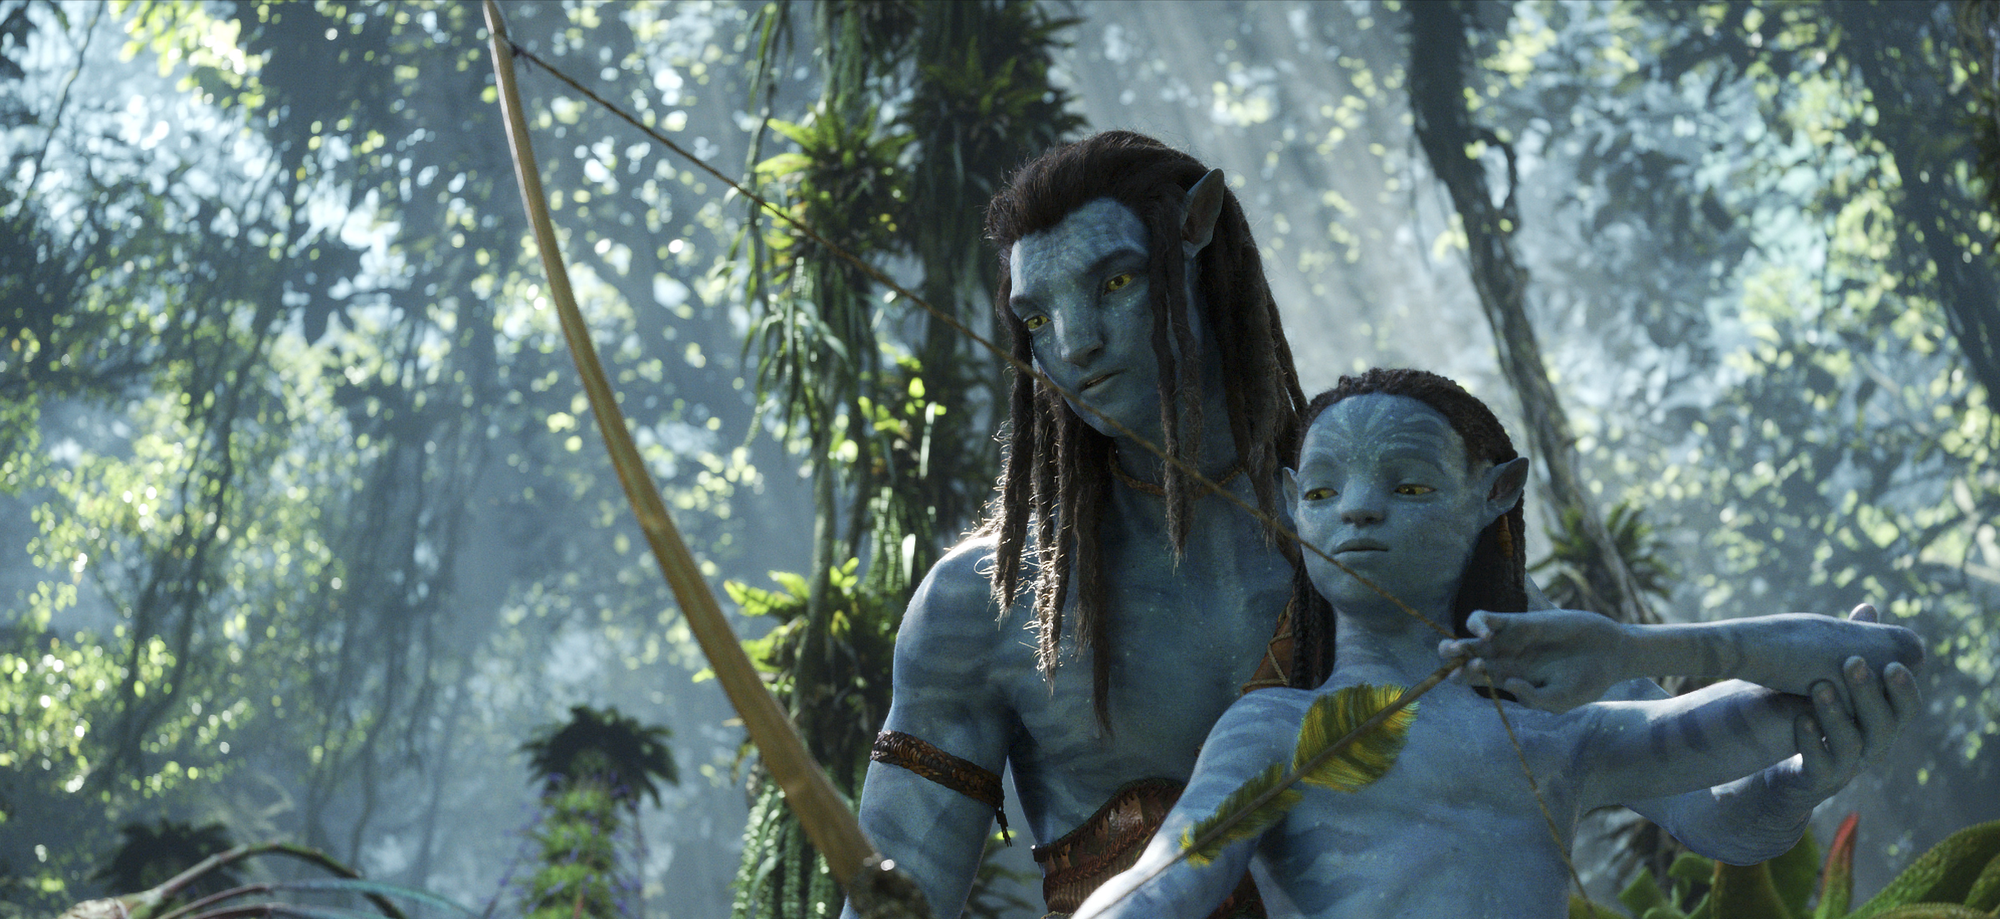 Sự thật về kỳ quan điện ảnh Avatar 2: Đạo diễn lặn 10km xuống lòng đại dương để tìm cảm hứng - Ảnh 9.